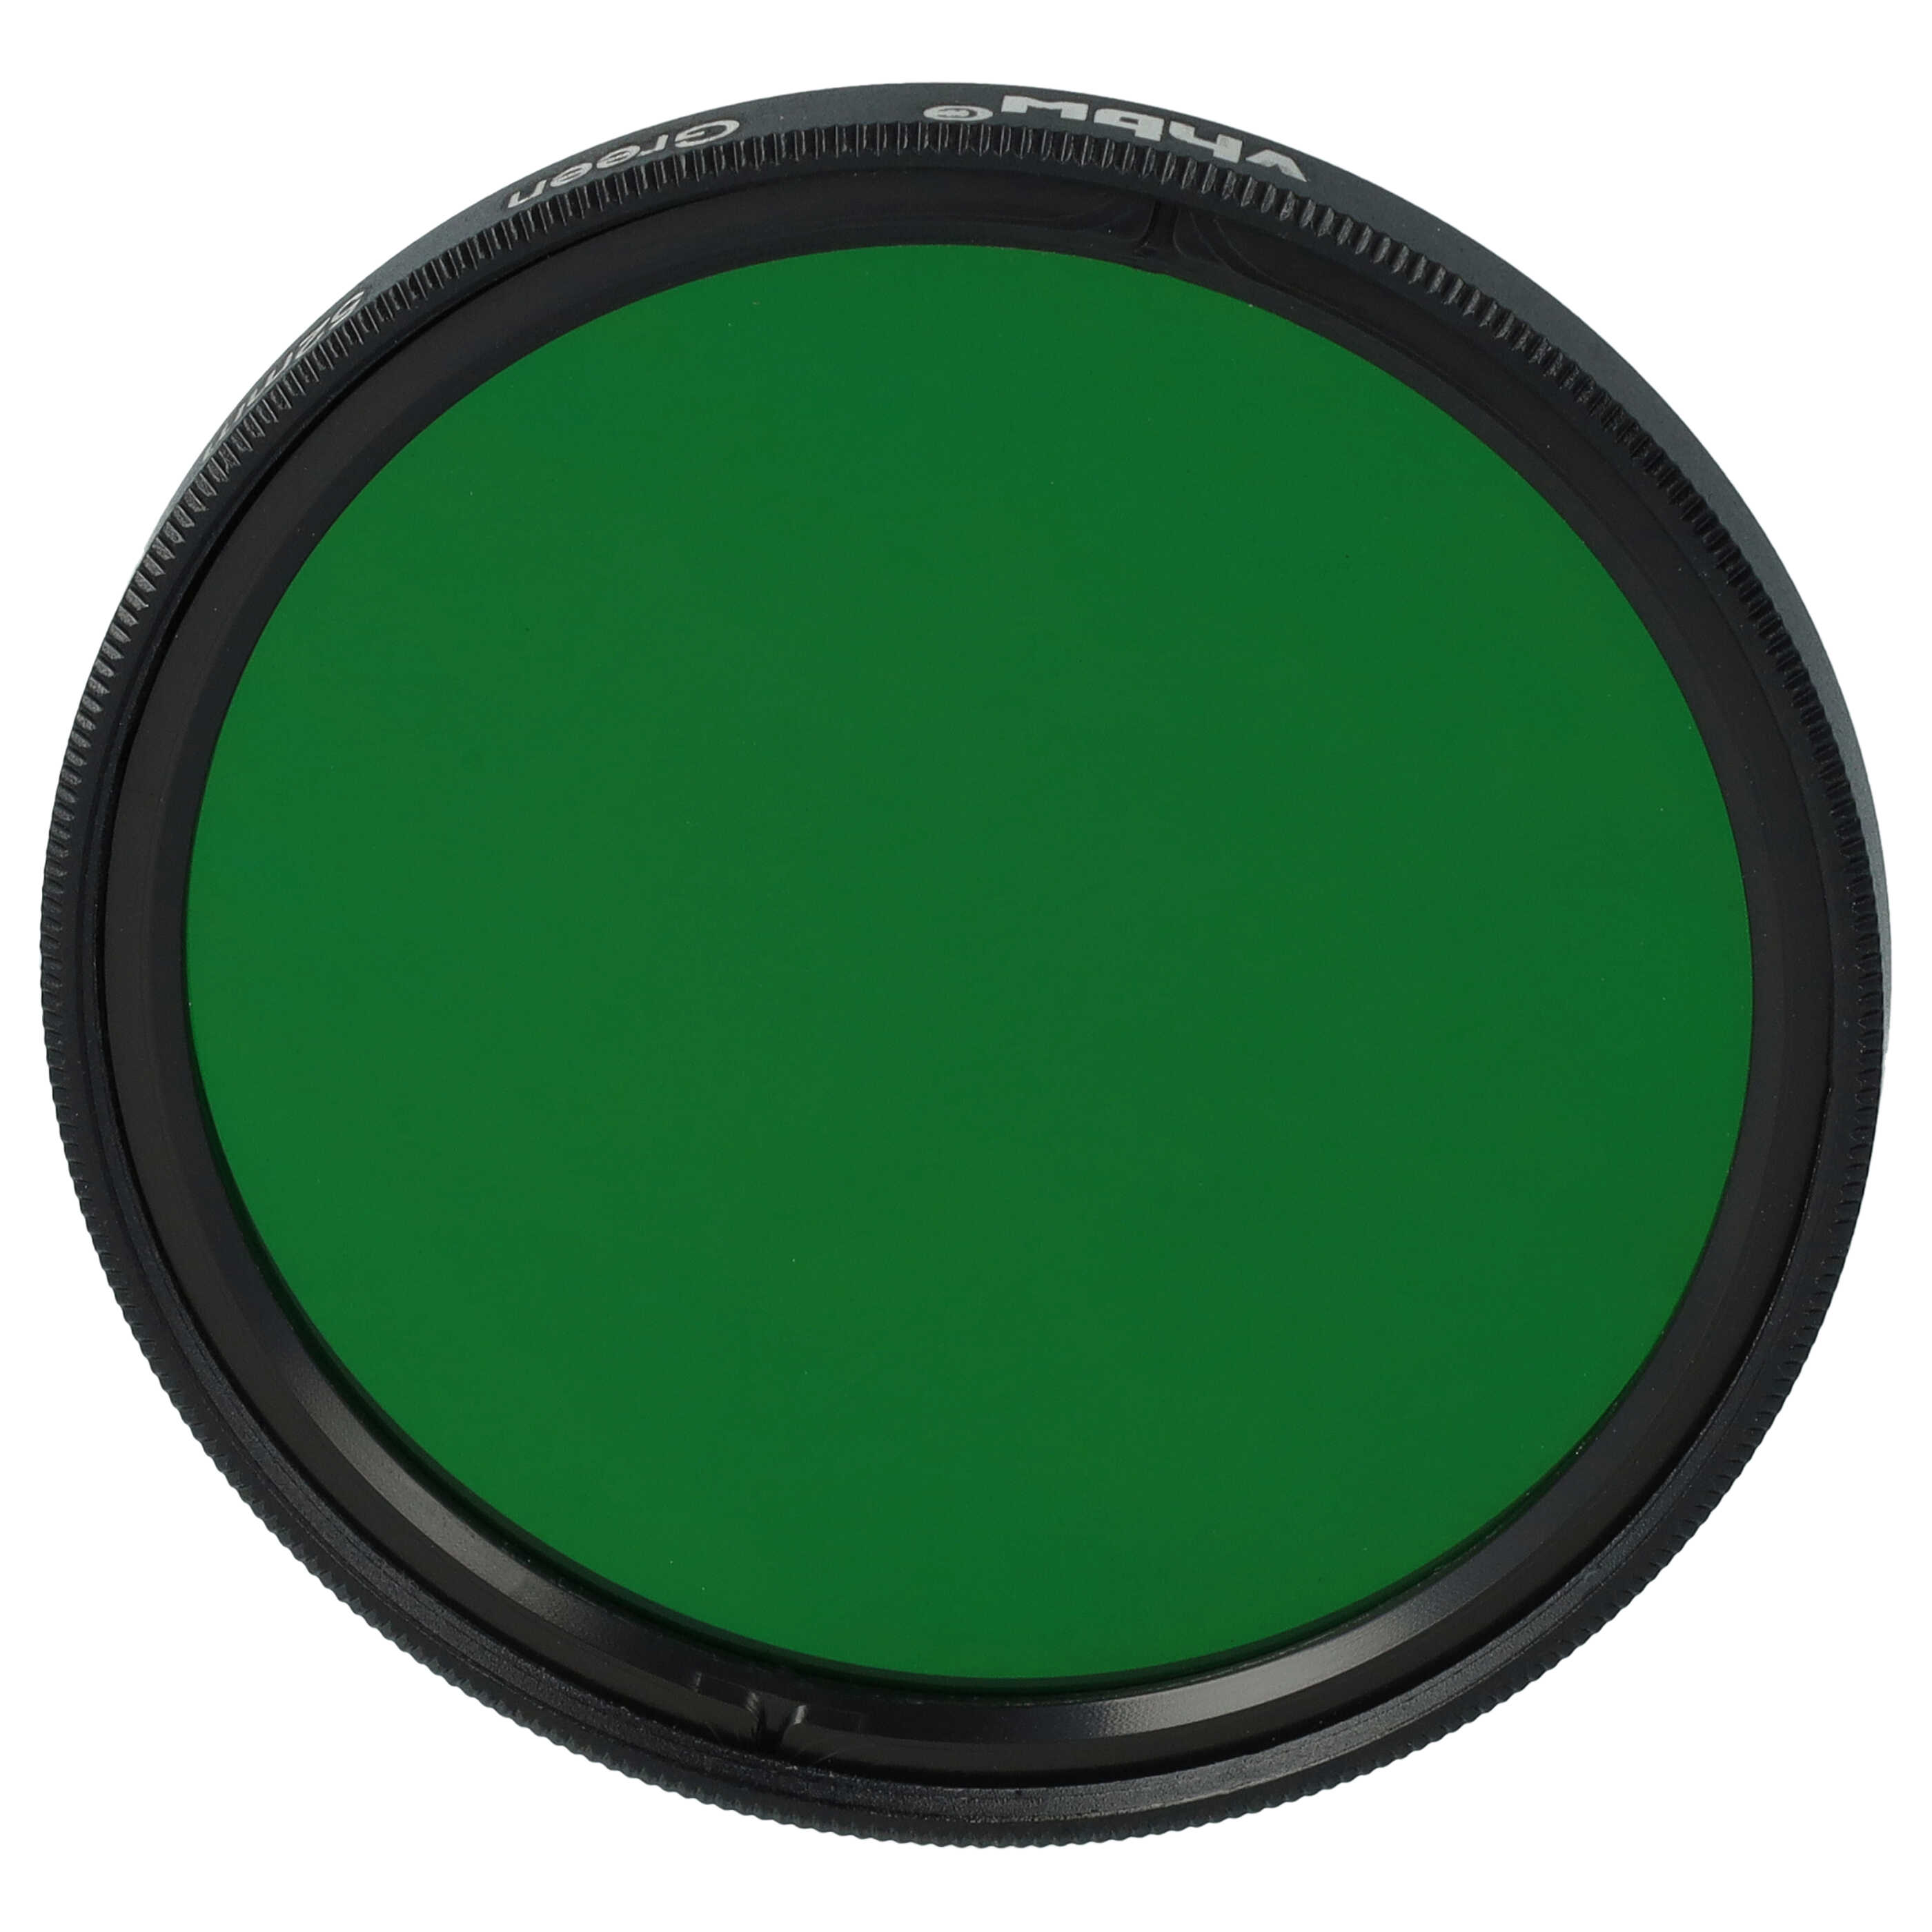 Filtro de color para objetivo de cámara con rosca de filtro de 52 mm - Filtro verde